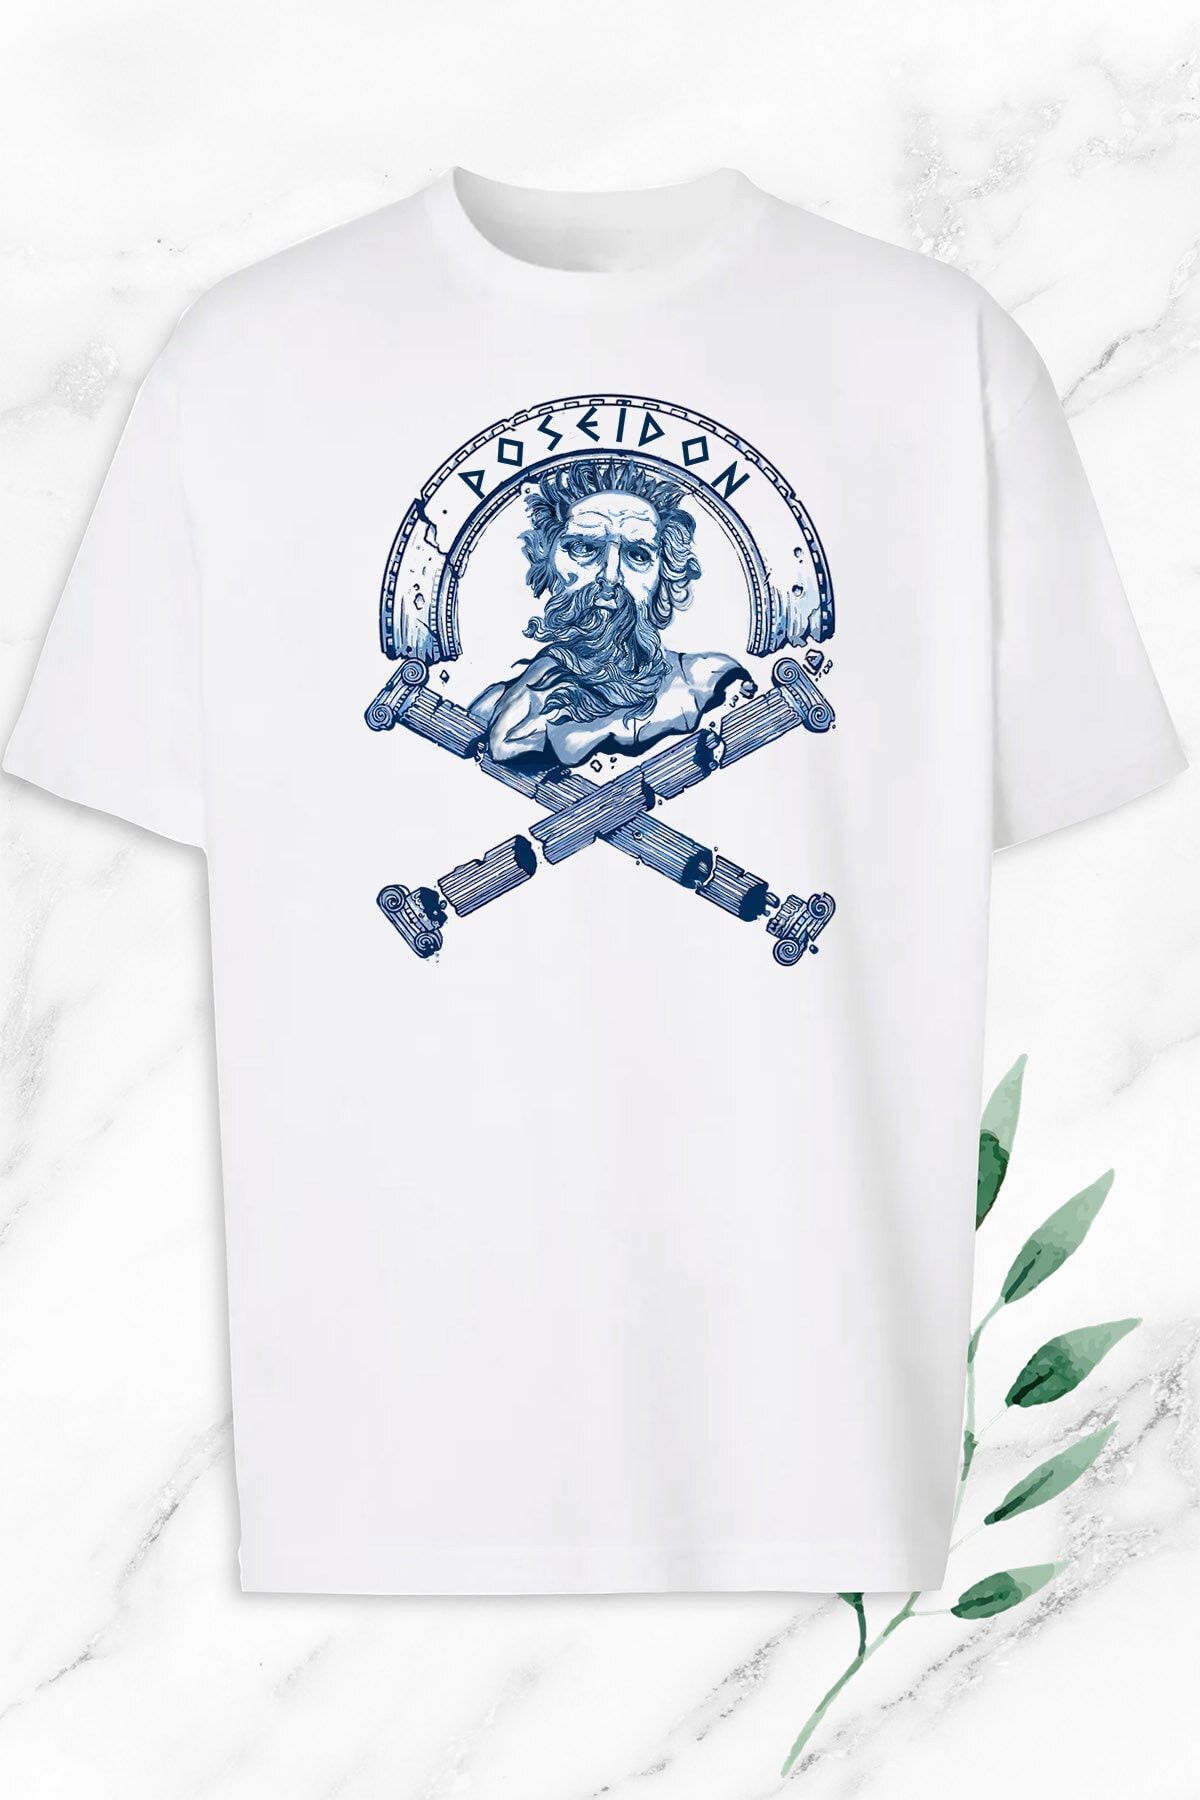 perseusshopping Unisex Beyaz Oversize Mitoloji Poseidon Heykeli Baskılı Tişört